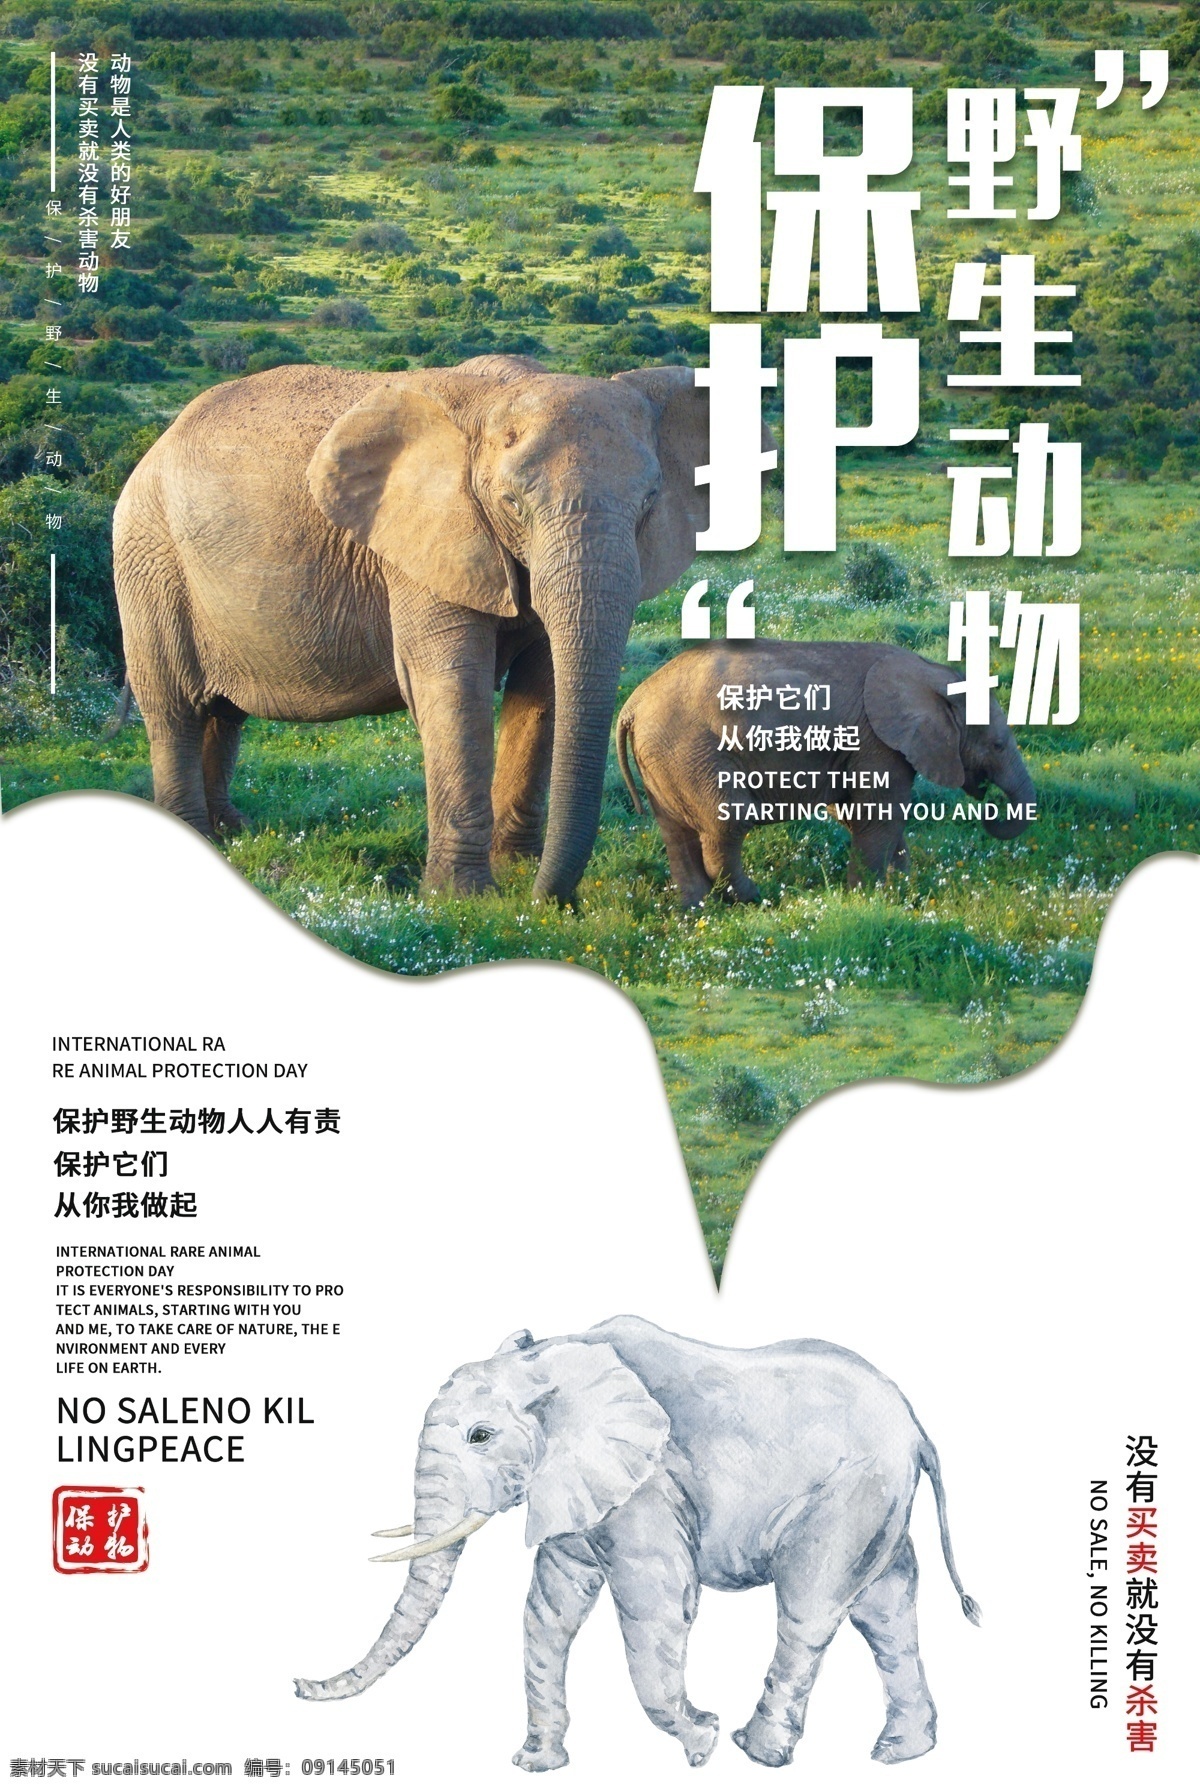 保护 动物 社会 公益活动 海报 保护动物 公益 活动 宣传